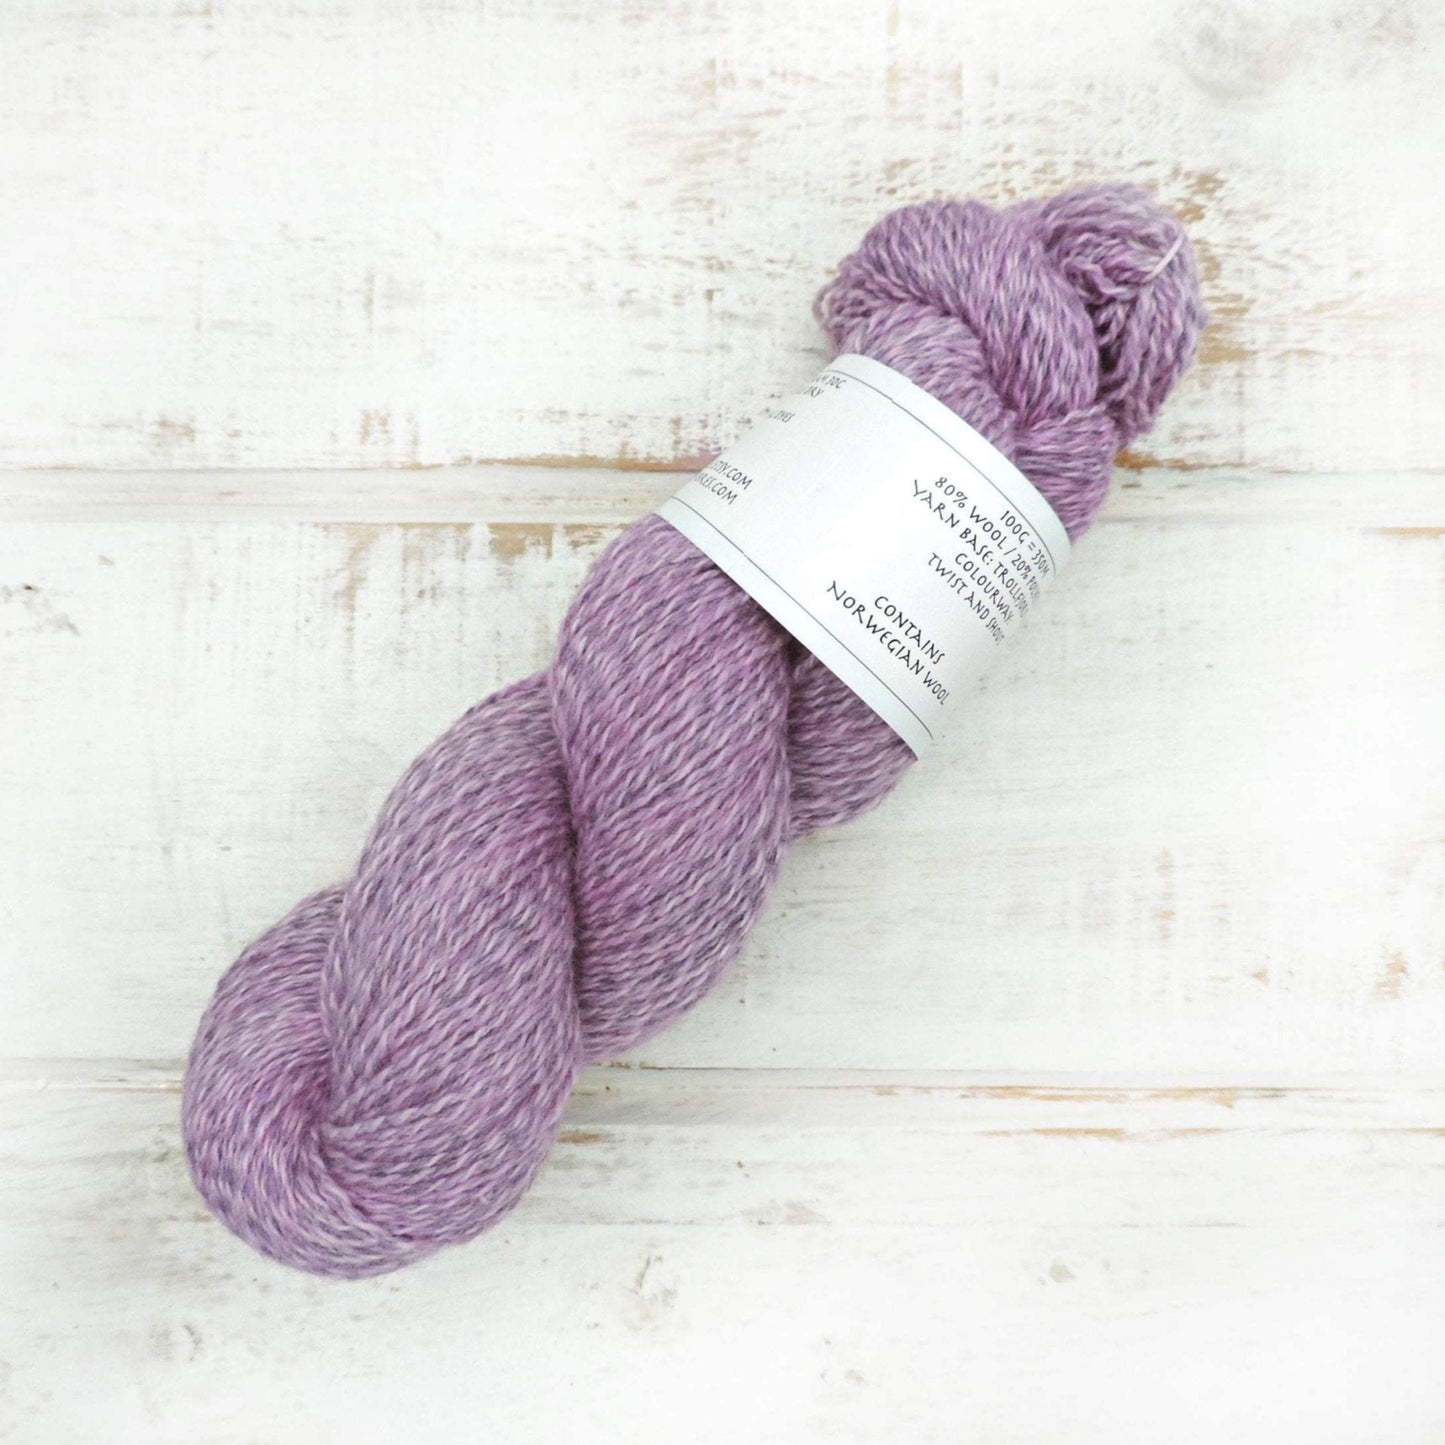 Twist and Shout - Trollfjord Sock - Hand Dyed Yarn - Marled yarn